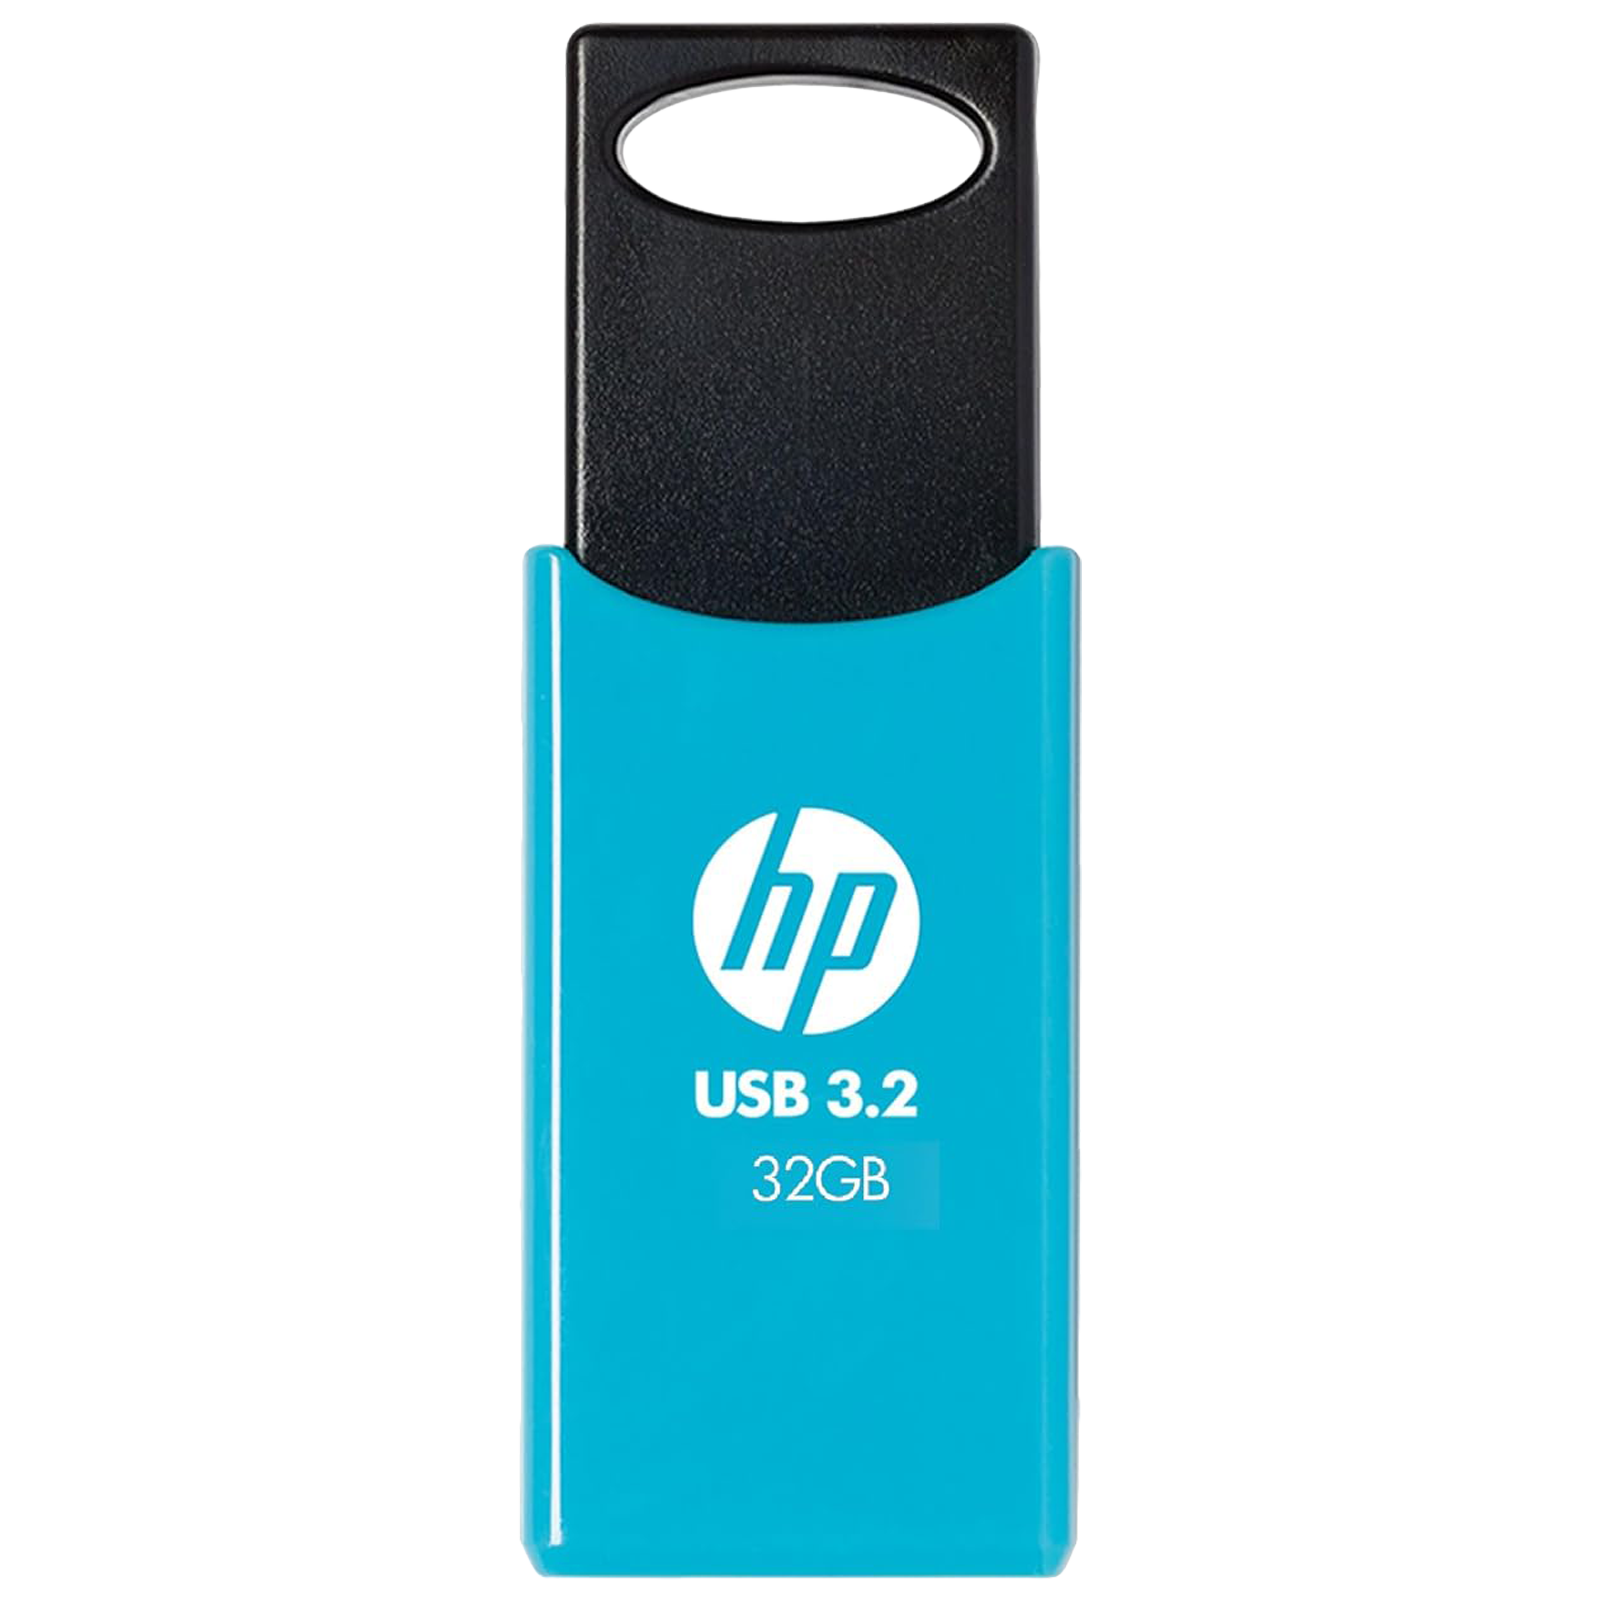 HP 712W 32GB USB 3.2 Flash Drive (Built-in Keyring Loop, 7Z376AA, Blue)